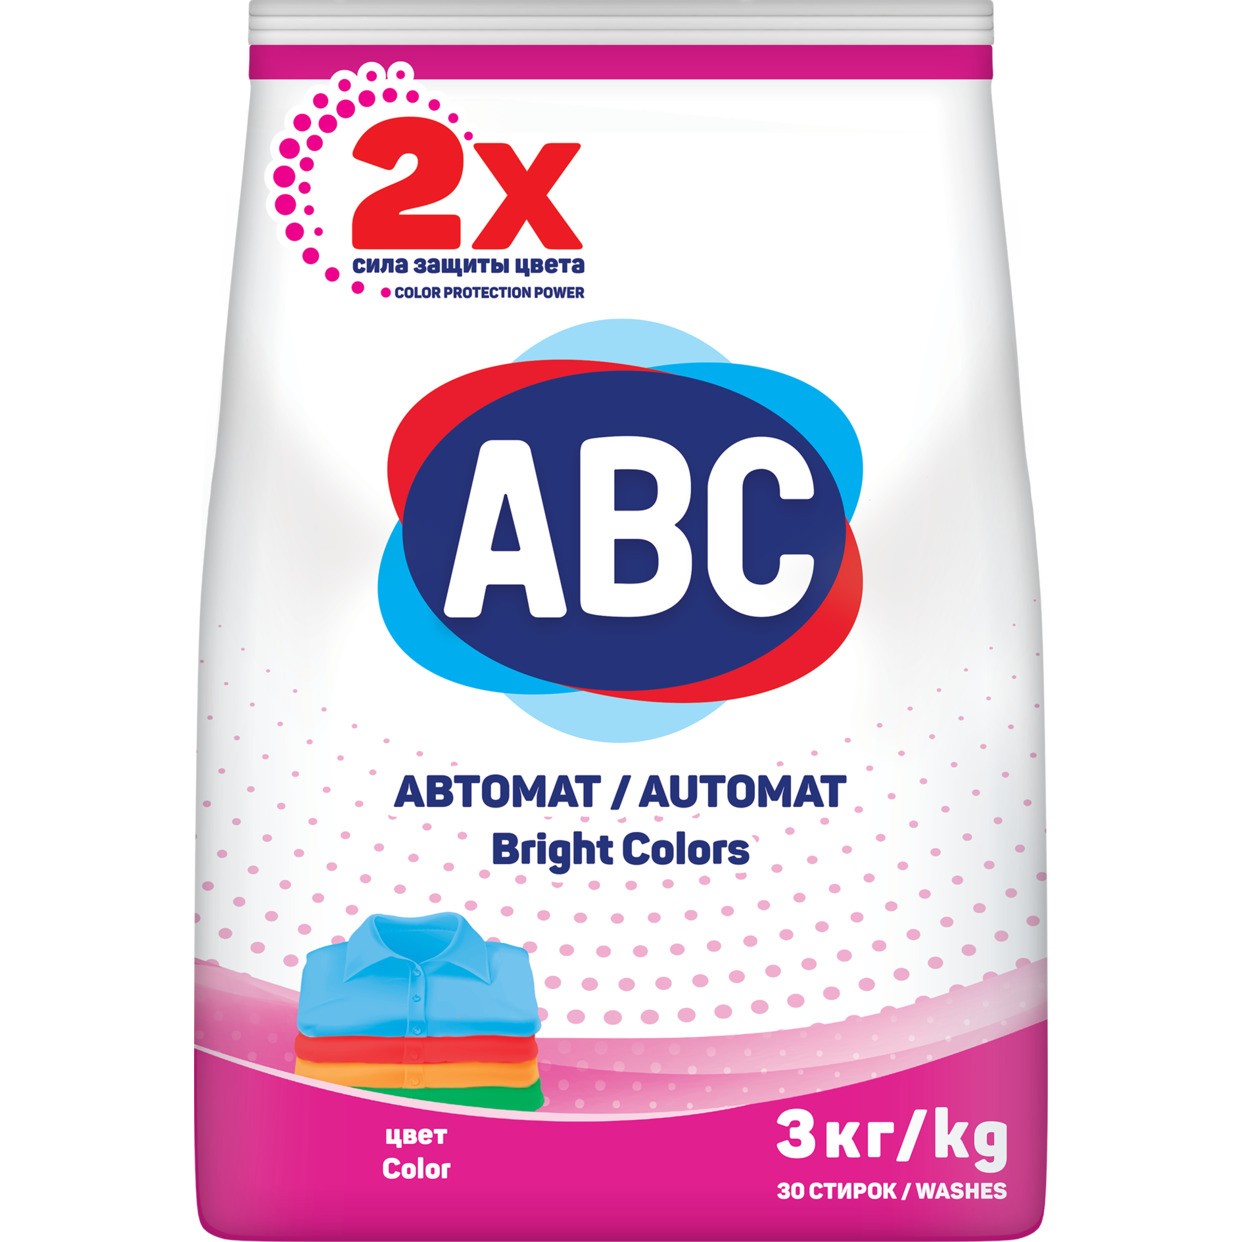 Порошок ABC для стирки белья для цветных вещей 3кг по акции в Пятерочке